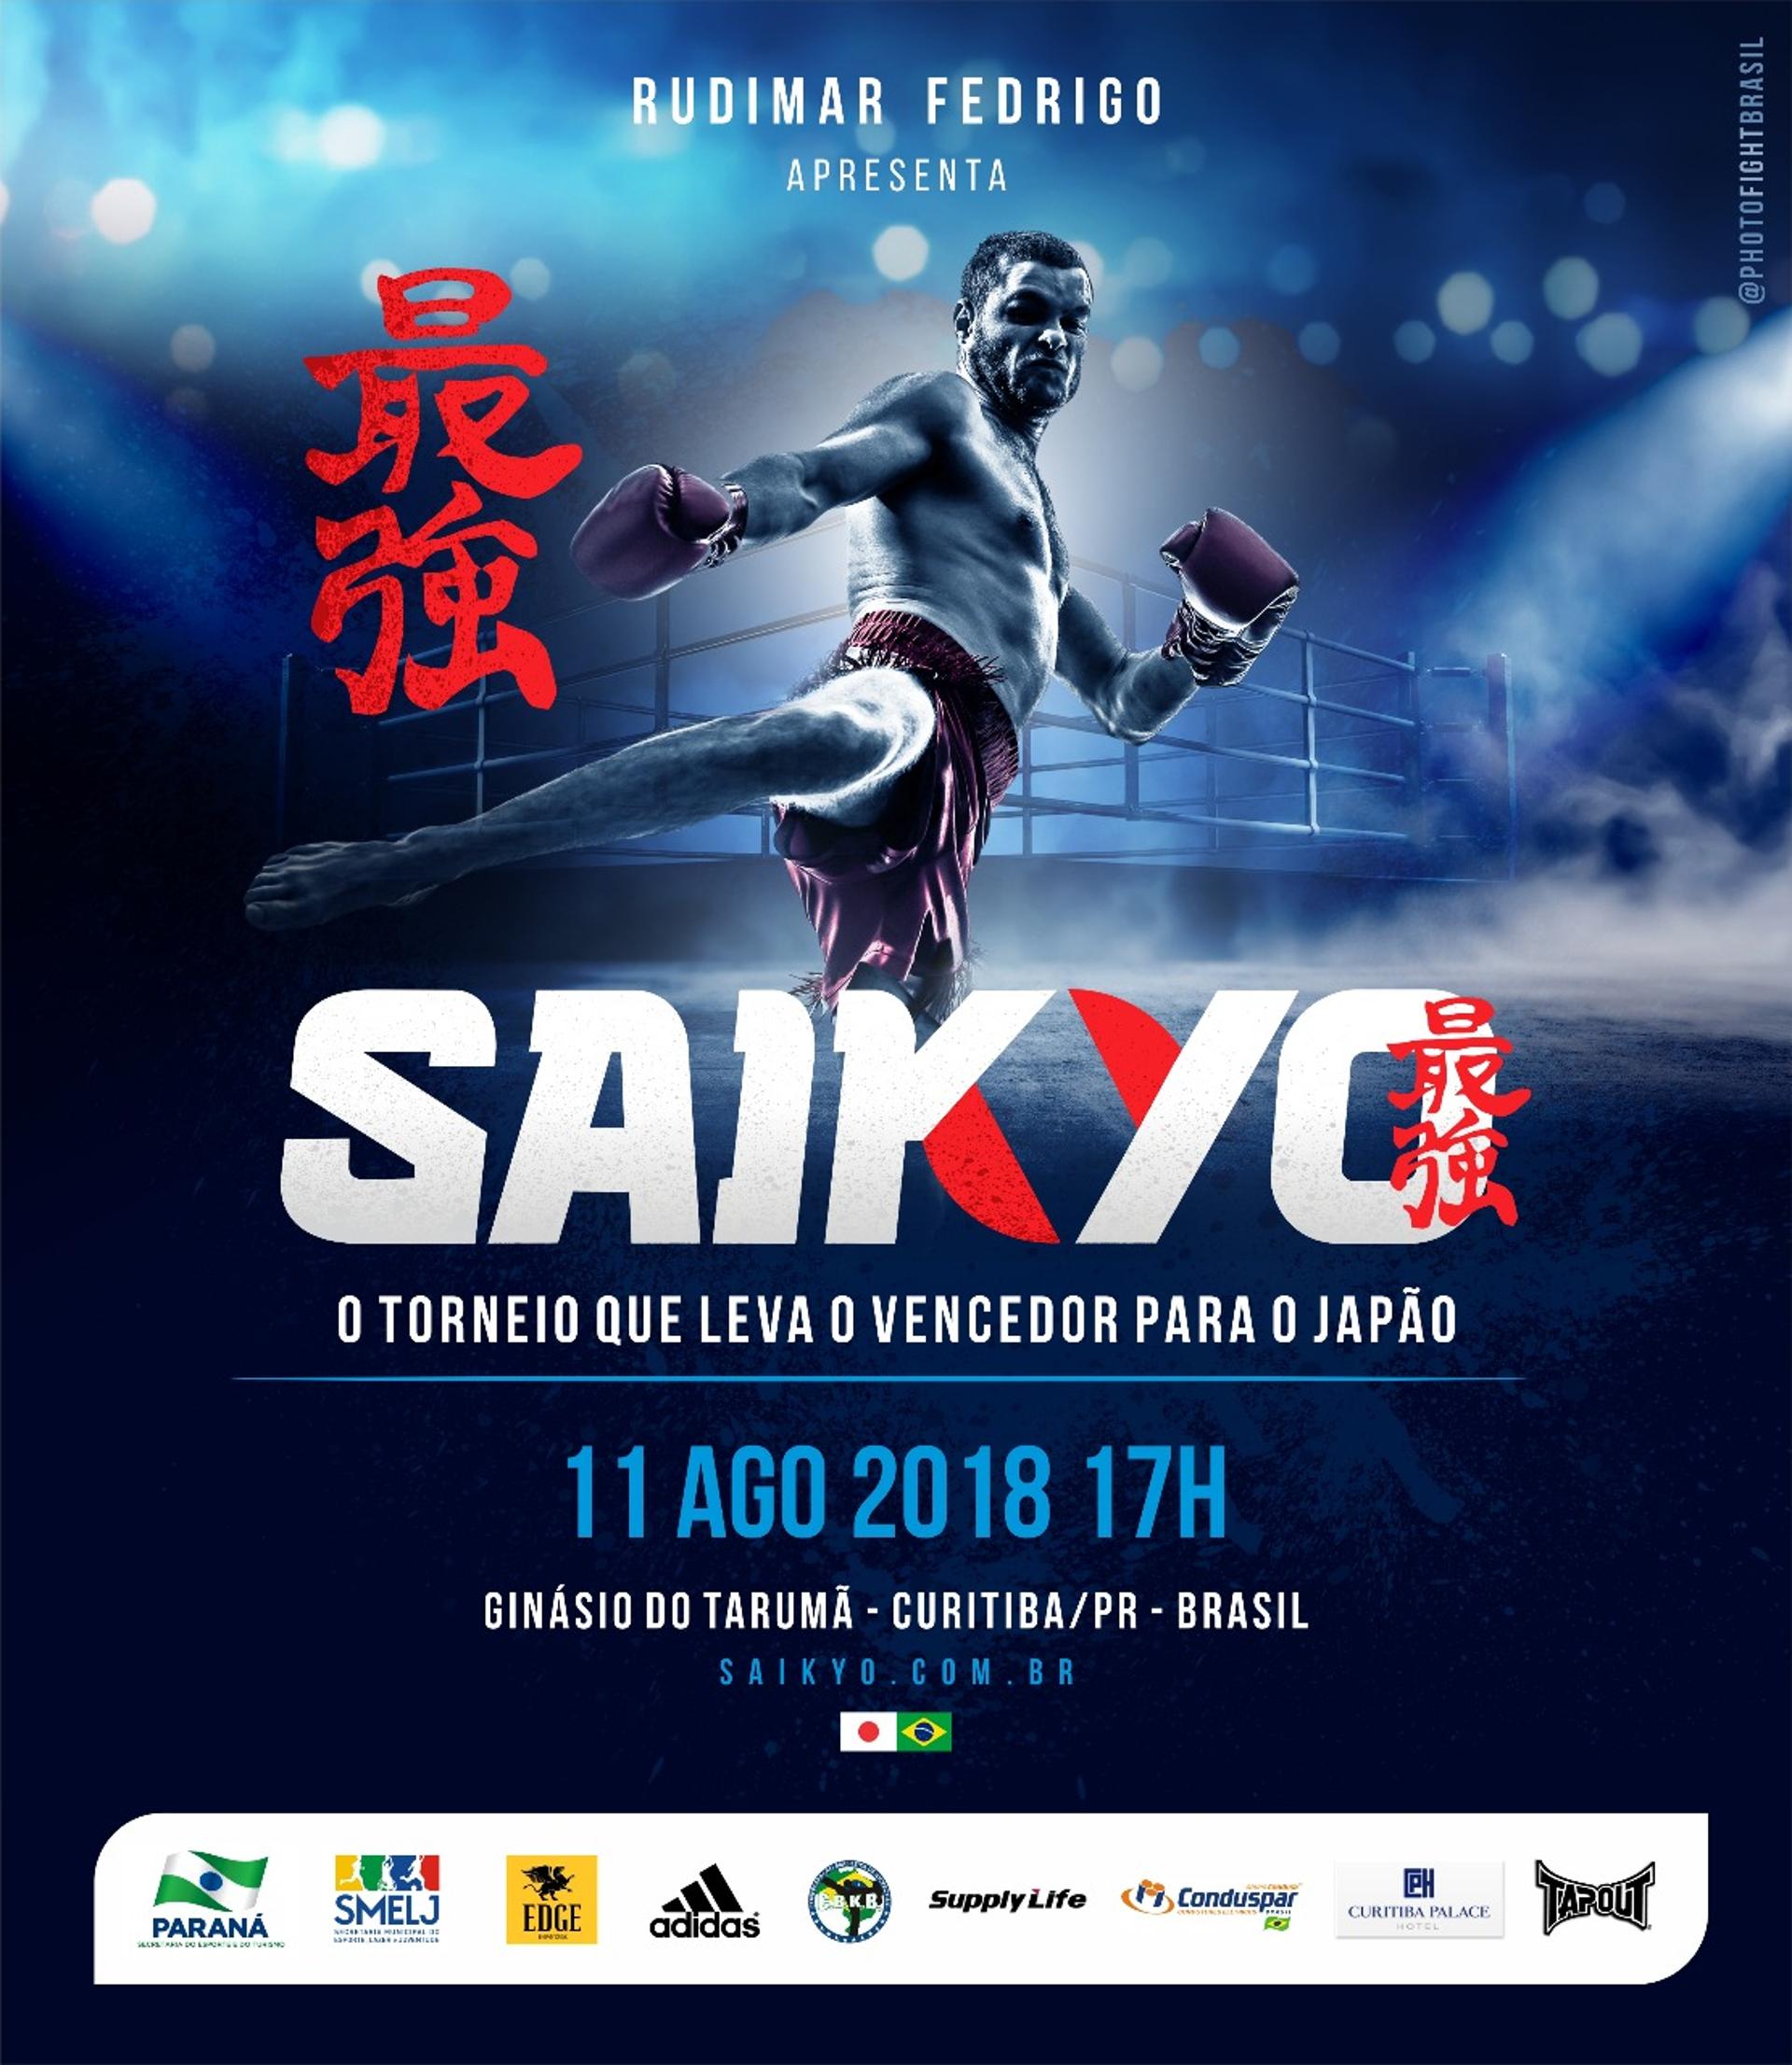 Saikyo vai marcar a primeira edição no dia 11 de agosto, em Curitiba, e promete um grande espetáculo (Foto: Divulgação)